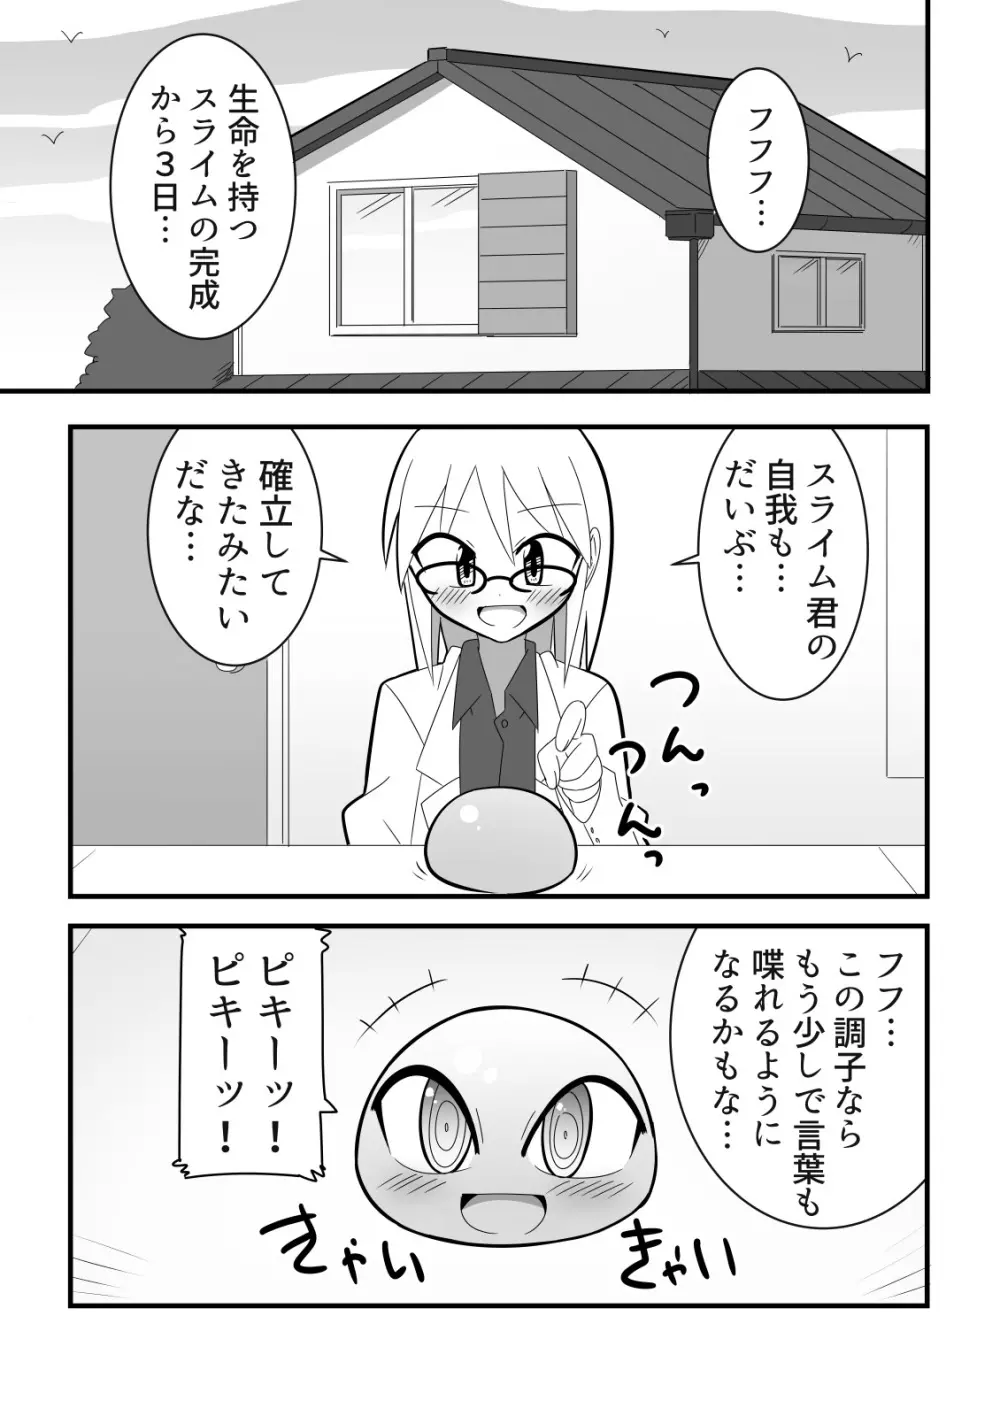 人外おねショタ漫画詰め合わせ集Vol.１ 43ページ